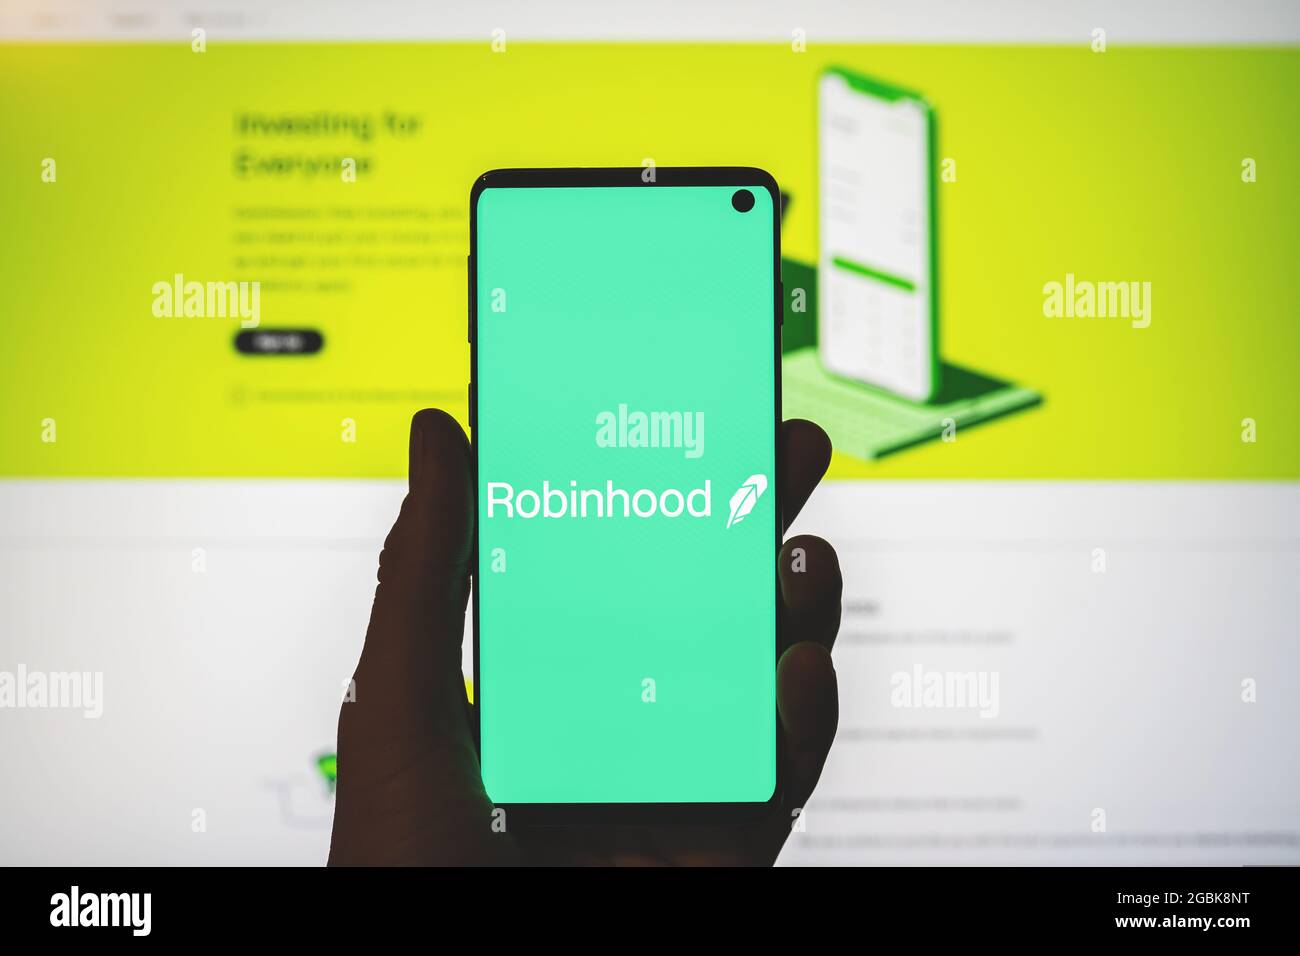 Robinhoodapp-Logo auf dem Smartphone in der Hand mit verschwommenem Website-Hintergrund. American Financial Service, Plattform für Kryptowährungen. Stockfoto